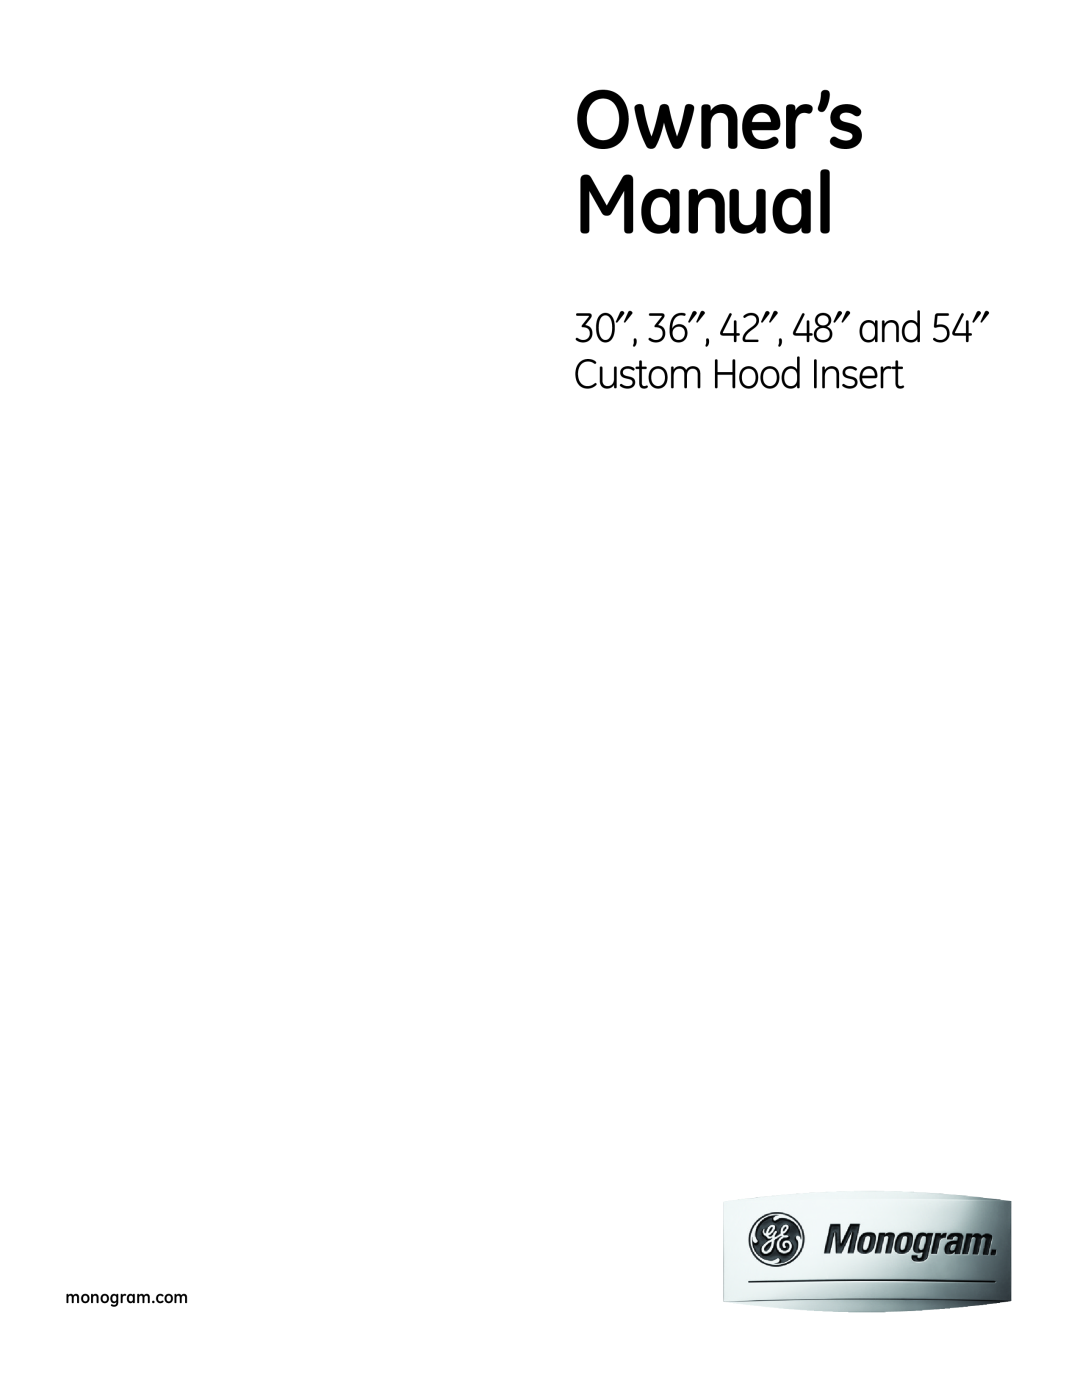 GE 36 owner manual 